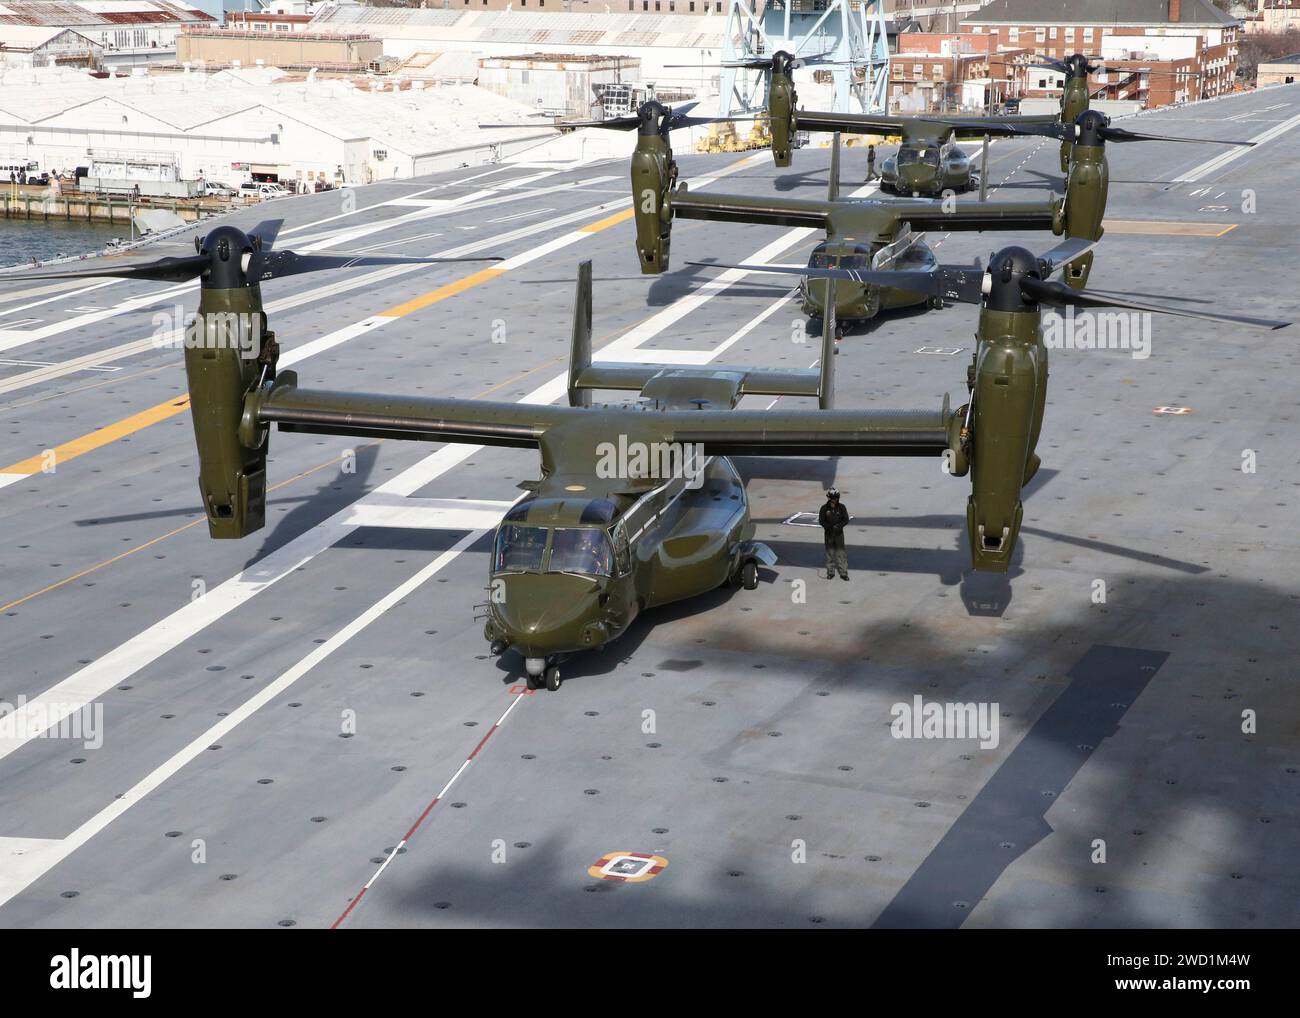 Les hélicoptères Marine One MV-22 Osprey quittent le porte-avions Pr-Commissioning Unit Gerald R. Ford. Banque D'Images